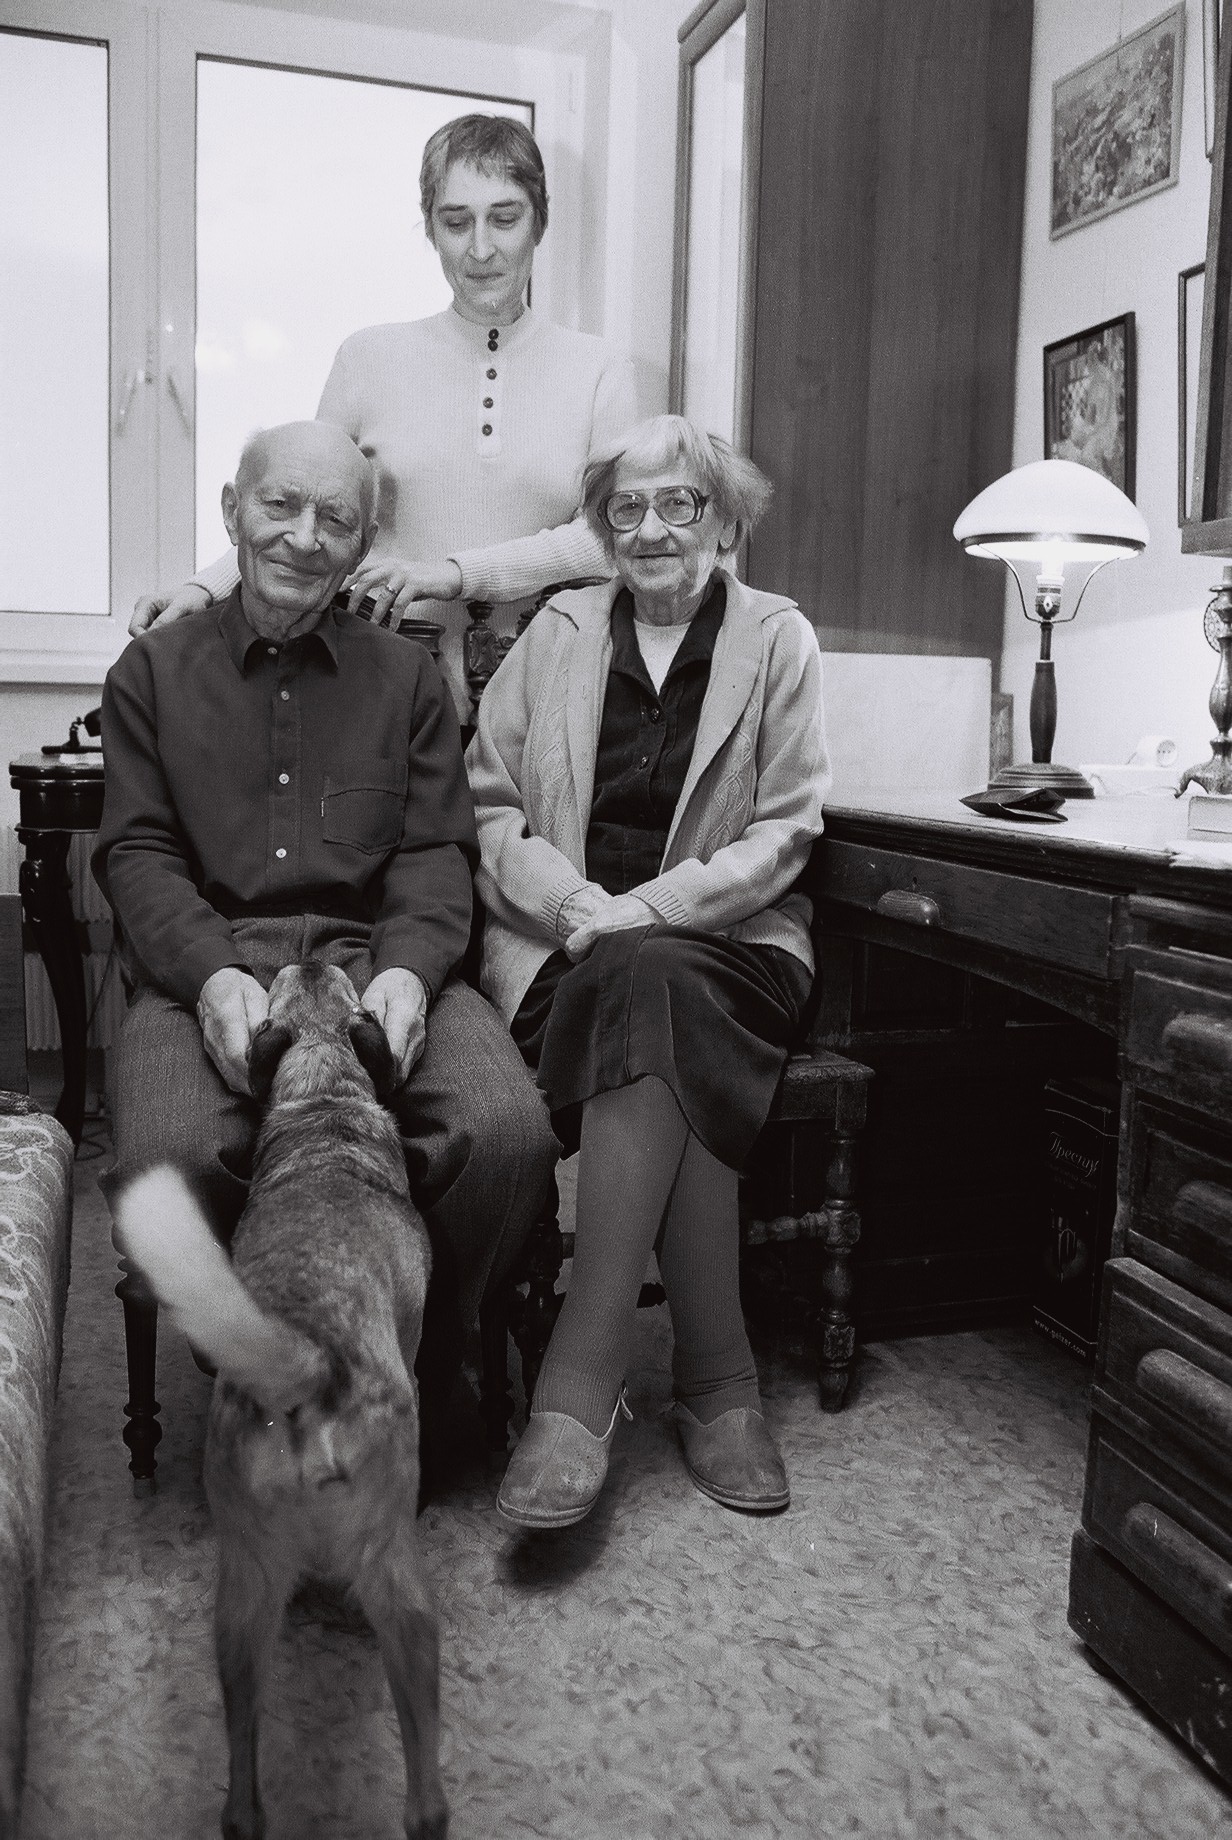 Auf dem Bild sind drei Menschen zu seine, ein älteres Paar und eine Frau. Das Paar sitzt, die Frau steht hinter ihnen. Sie ist ihre Tochter. Der Mann streichelt die Schnauze eines Hundes. Das Bild ist schwarzweiß, es wurde in Moskau im Winter 2004 aufgenommen.